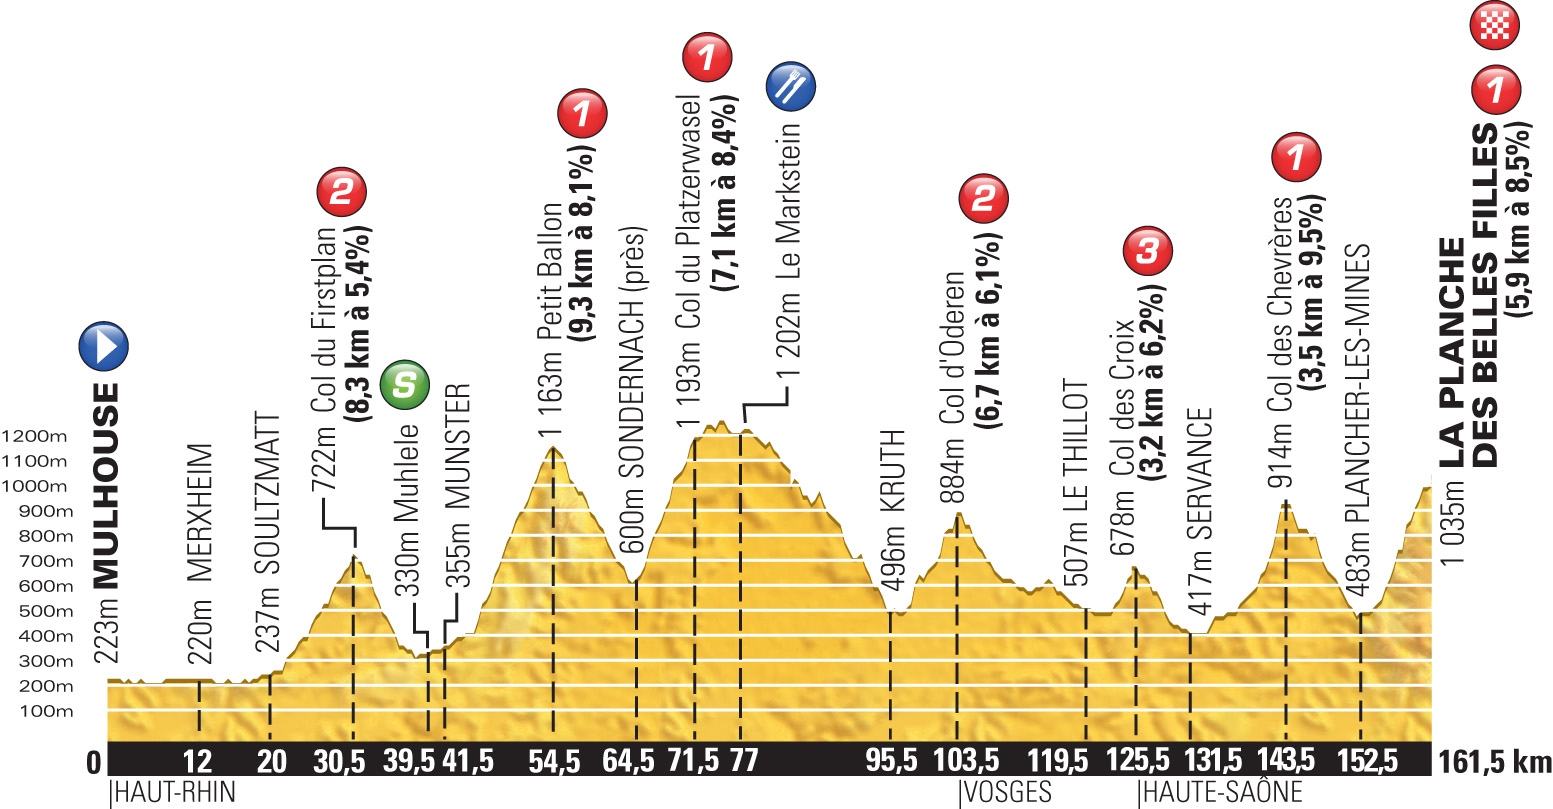 Das Profil der zehnten Tour-Etappe am Montag, dem französischen Nationalfeiertag, zur Station Planche des Belles Filles in der Nähe von Belfort.